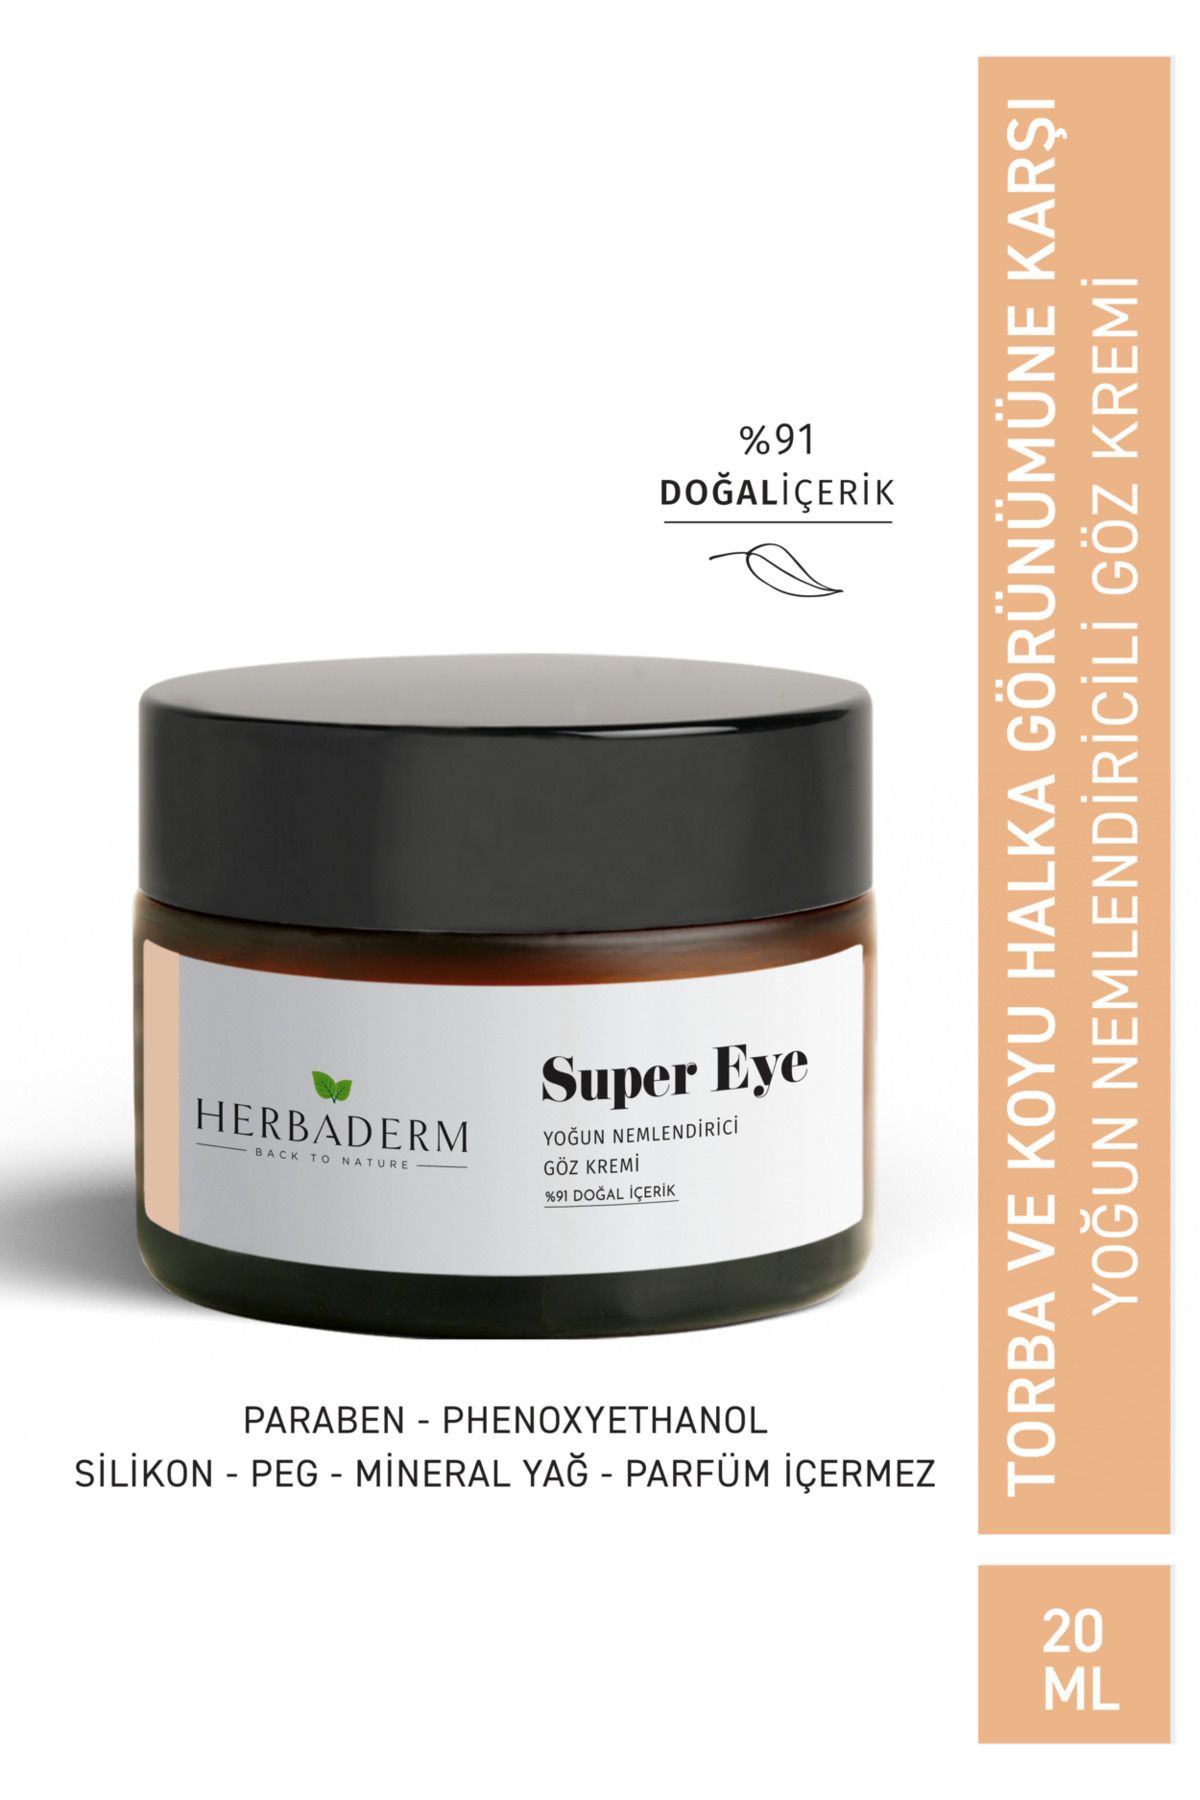 Herbaderm Super Eye Koyu Halka Ve Kırışıklık Karşıtı Kolajen + C Vitamini Nemlendirici Göz Çevresi Kremi